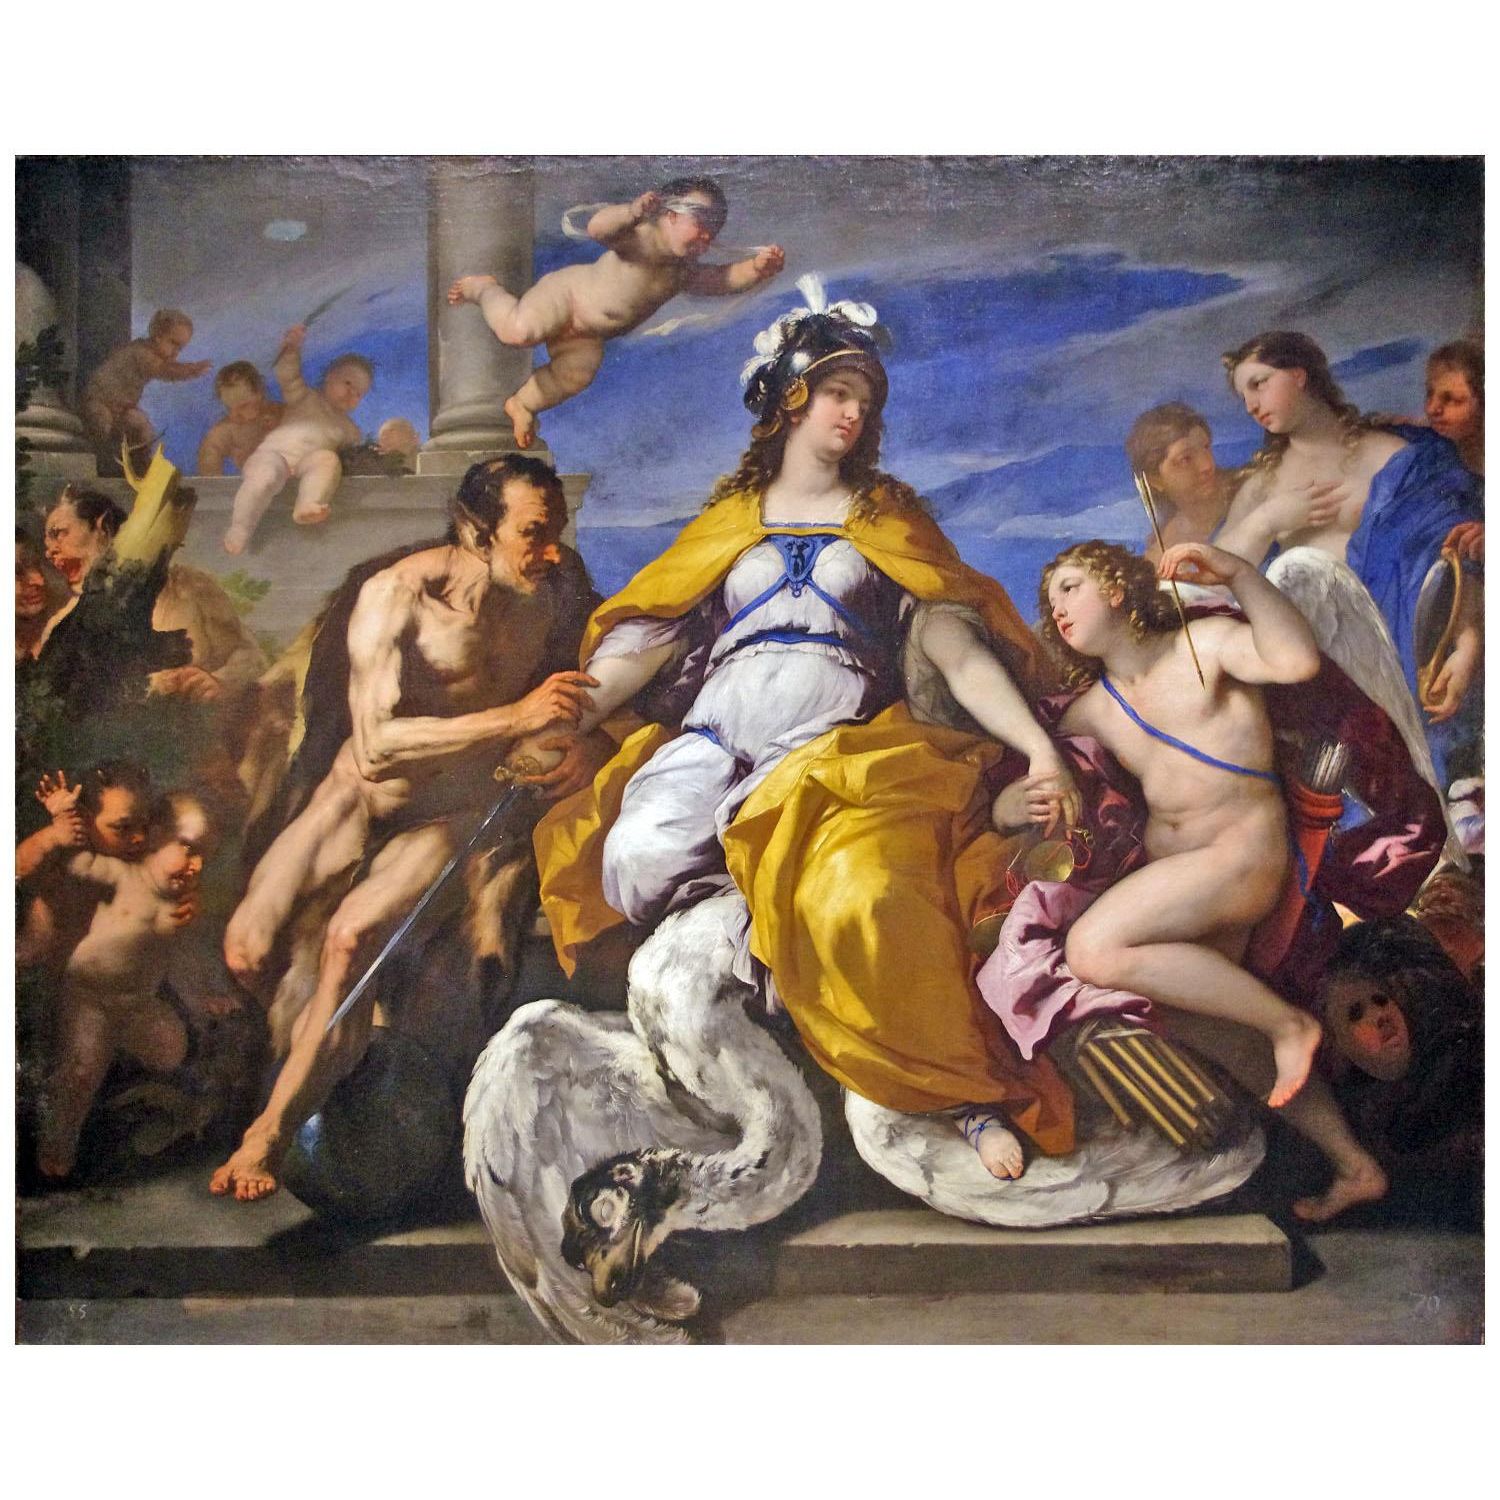 Luca Giordano. L'amore e i vizi disarmano il giudizio. 1680. Pushkin Museum